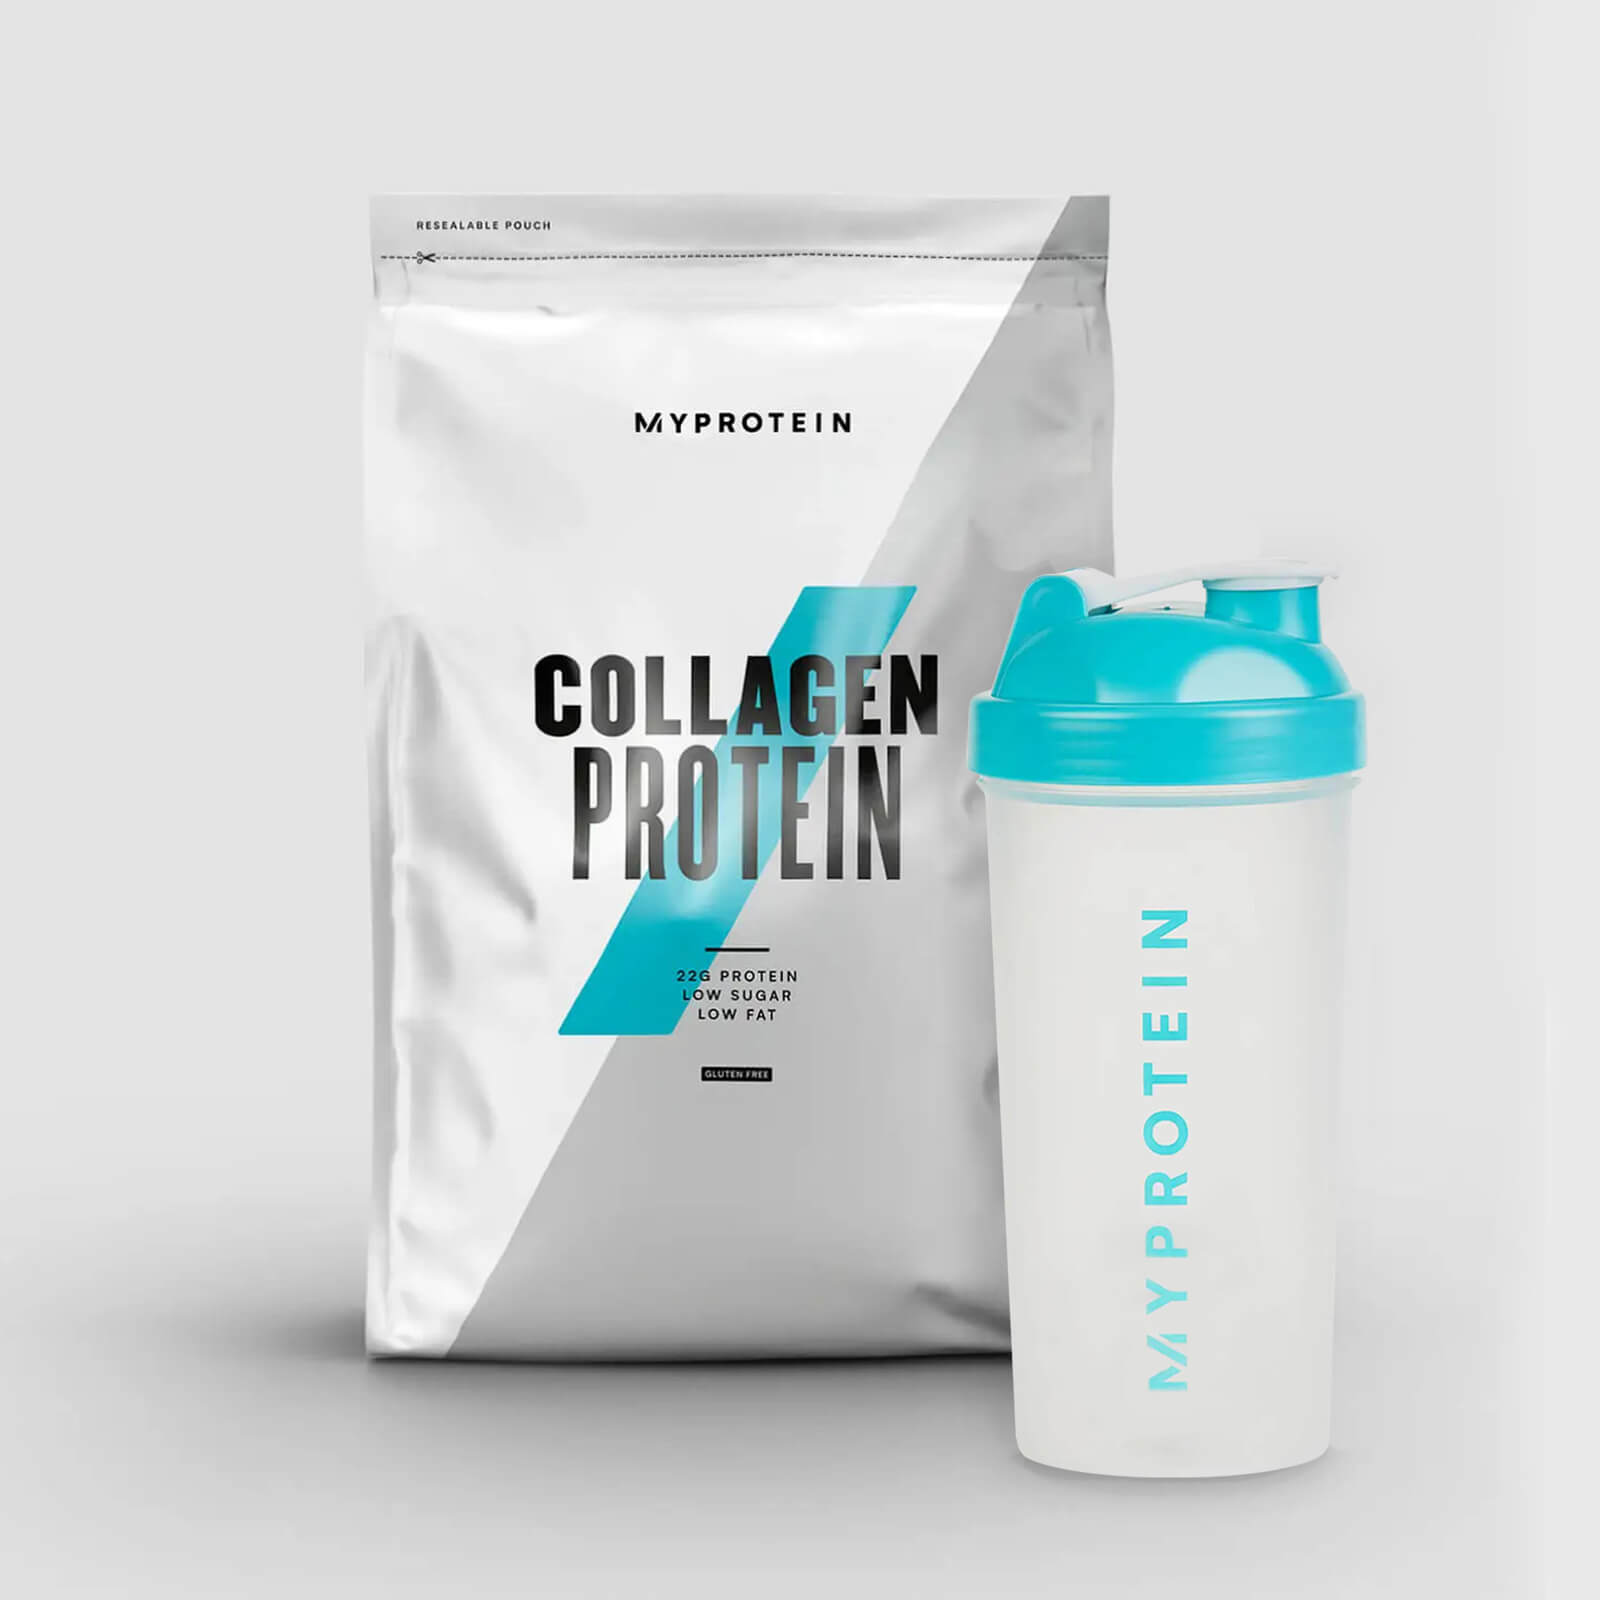 Collagen Protein Starter Pack